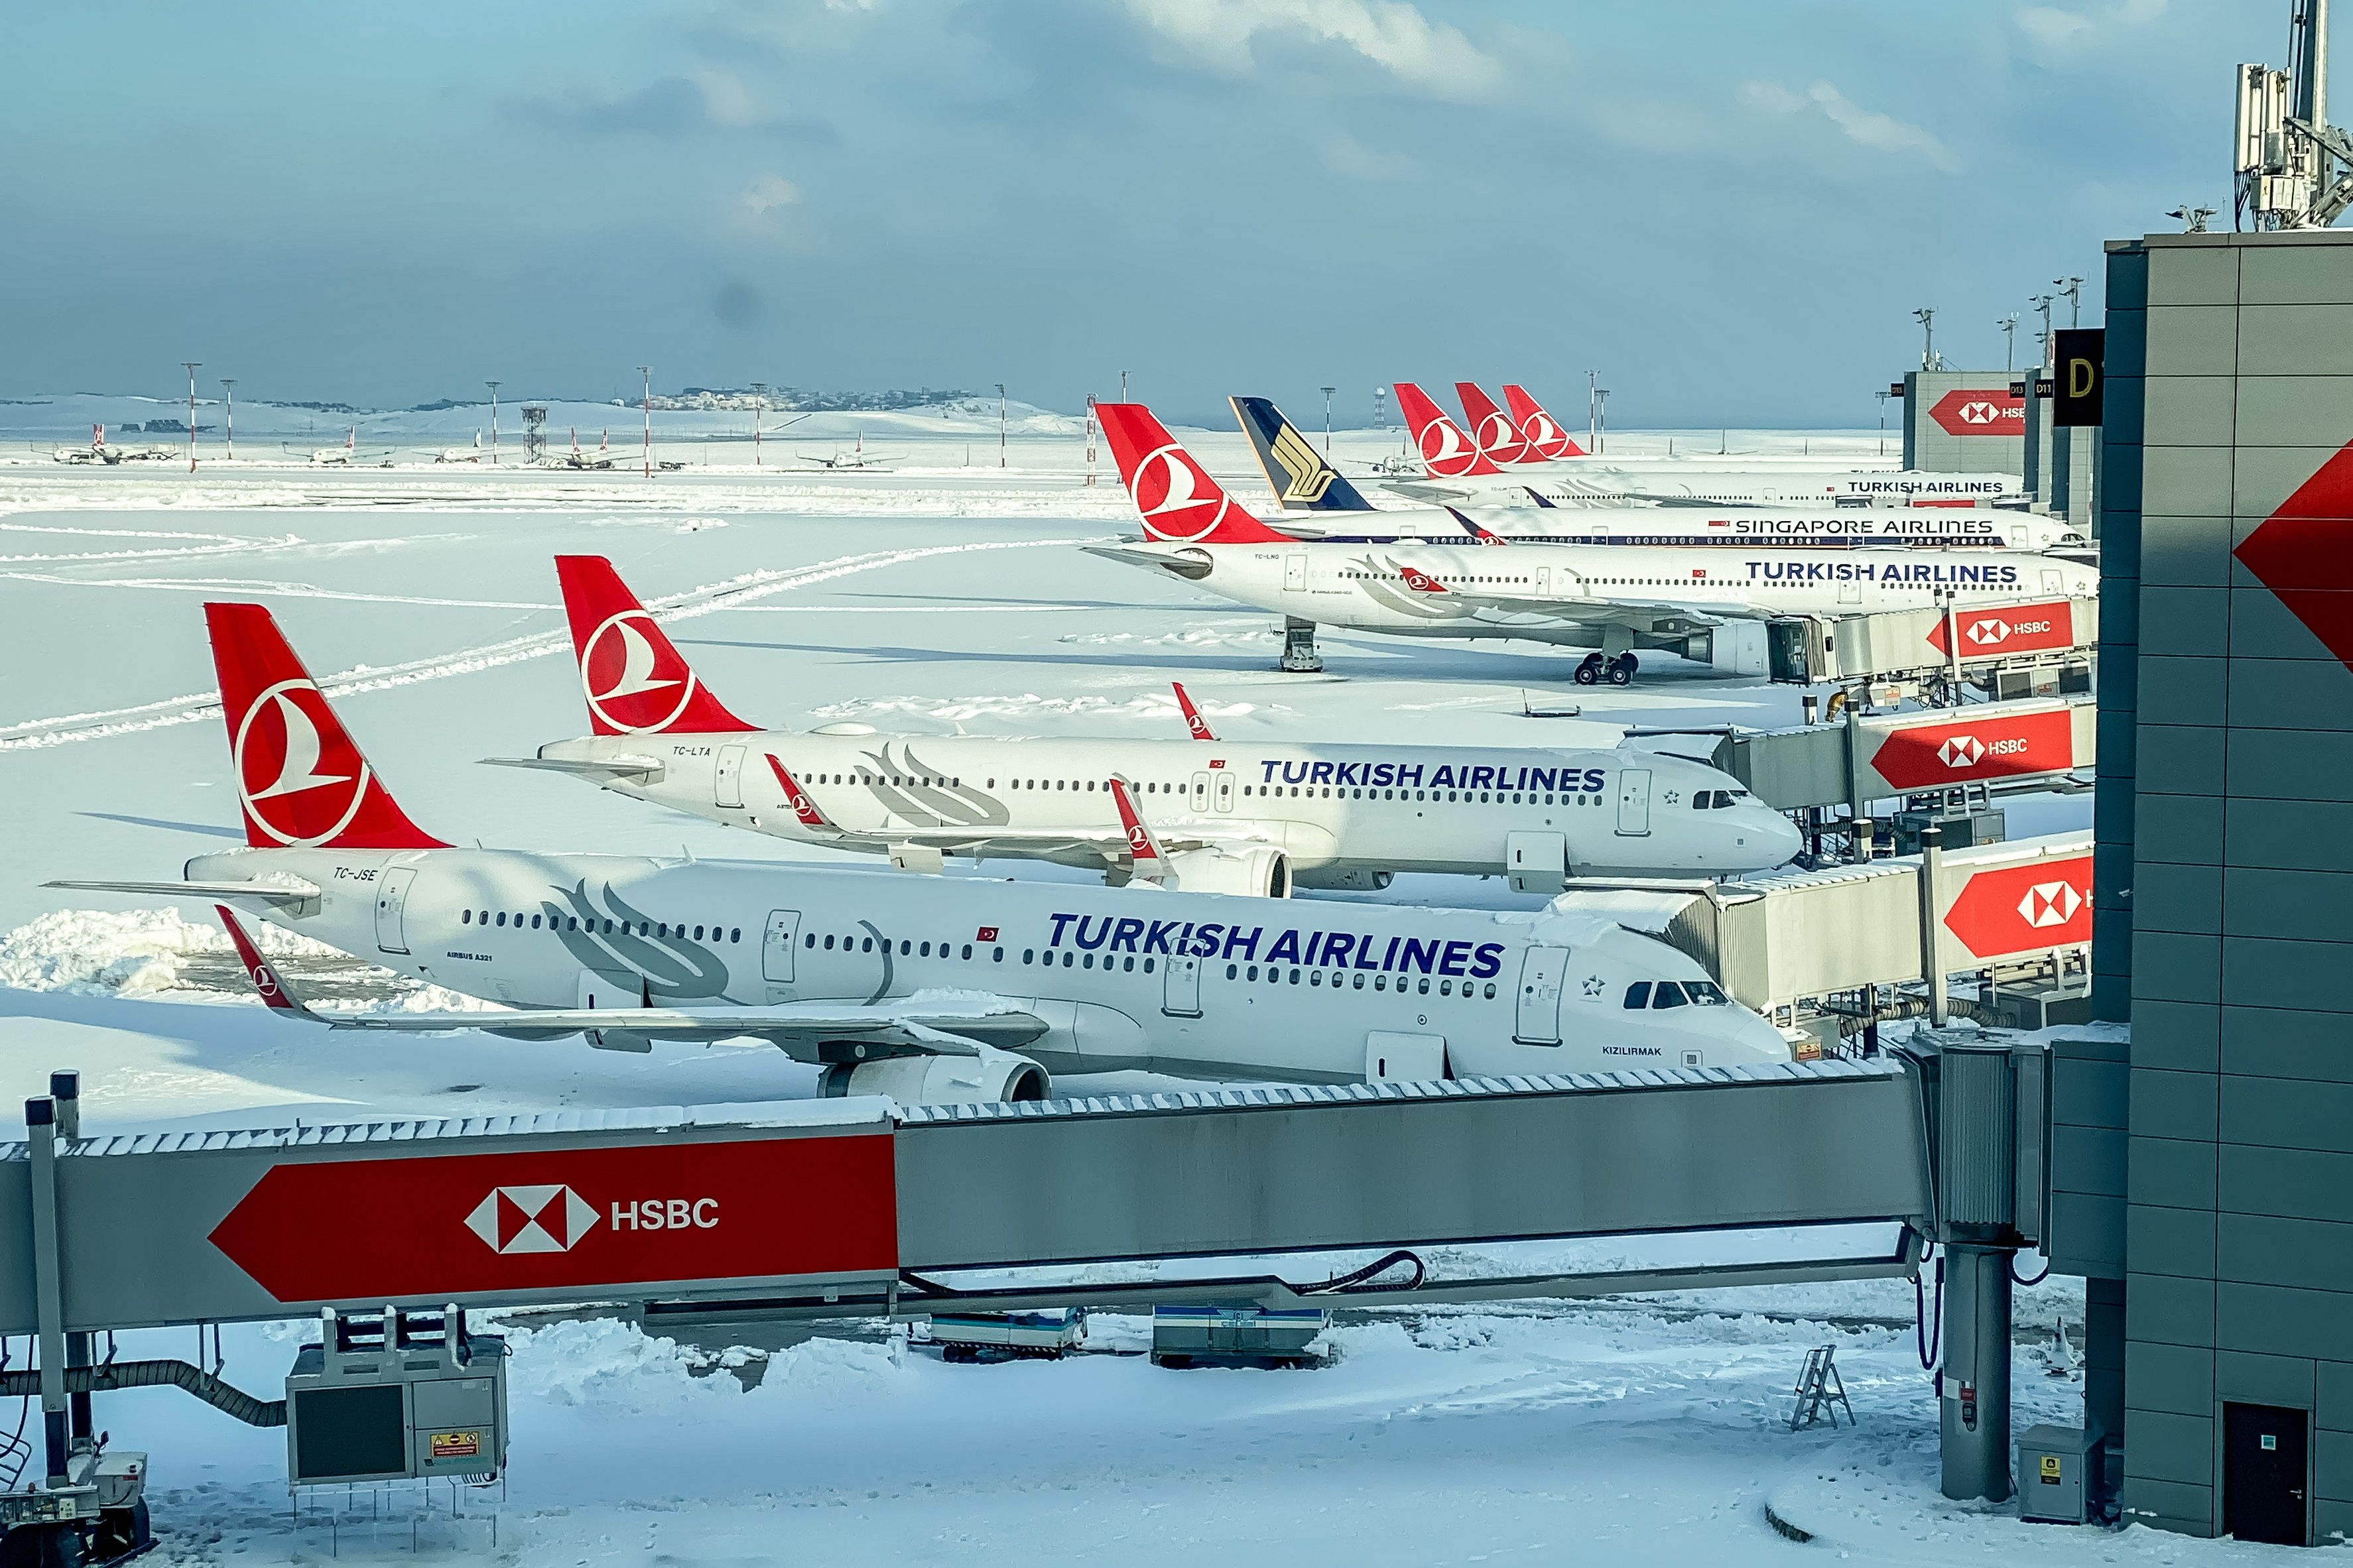 Der Schneesturm in Istanbul führt zu über 200 Flugausfällen bei Turkish Airlines